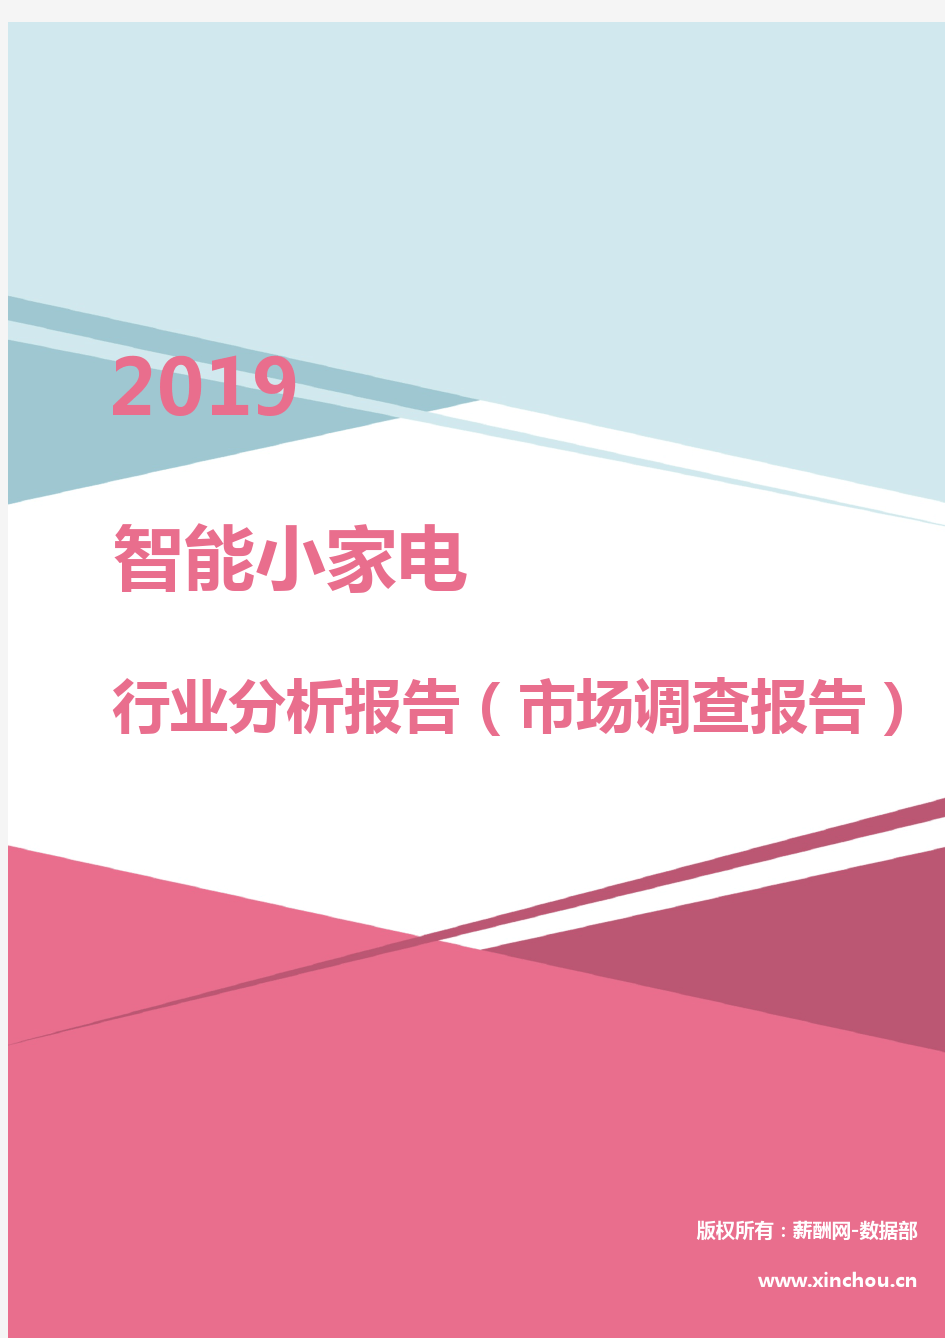 2019年智能小家电行业分析报告(市场调查报告)